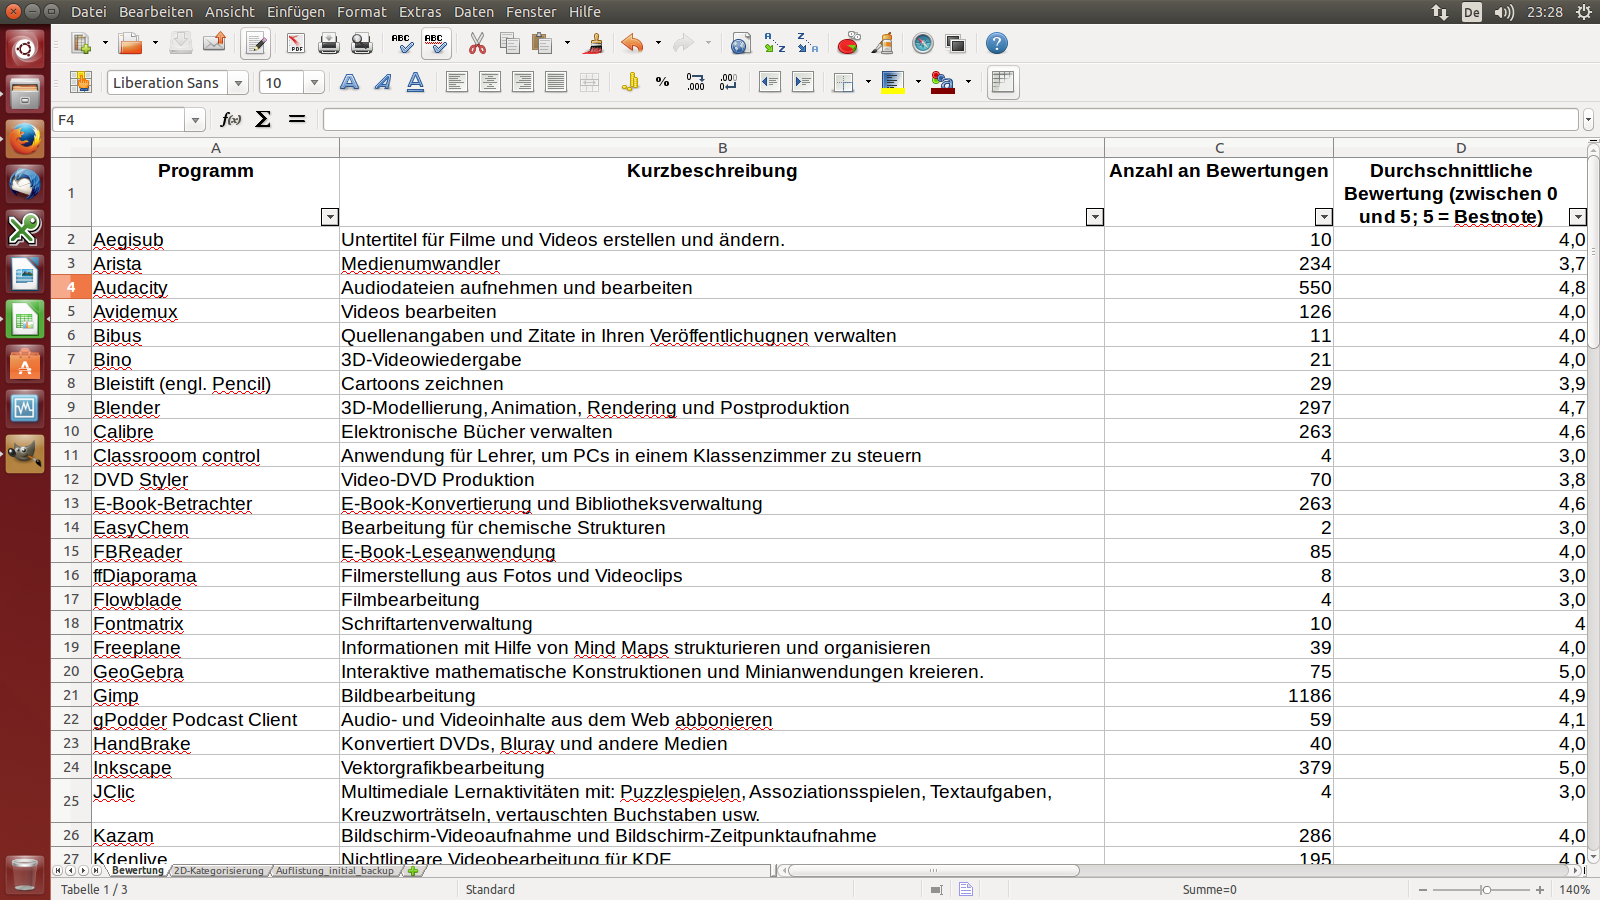 Bildschirmfoto des Beginns der Tabelle mit den gesammelten Daten über die E-Learning-Programme unter Ubuntu Linux Desktop 14.04 LTS